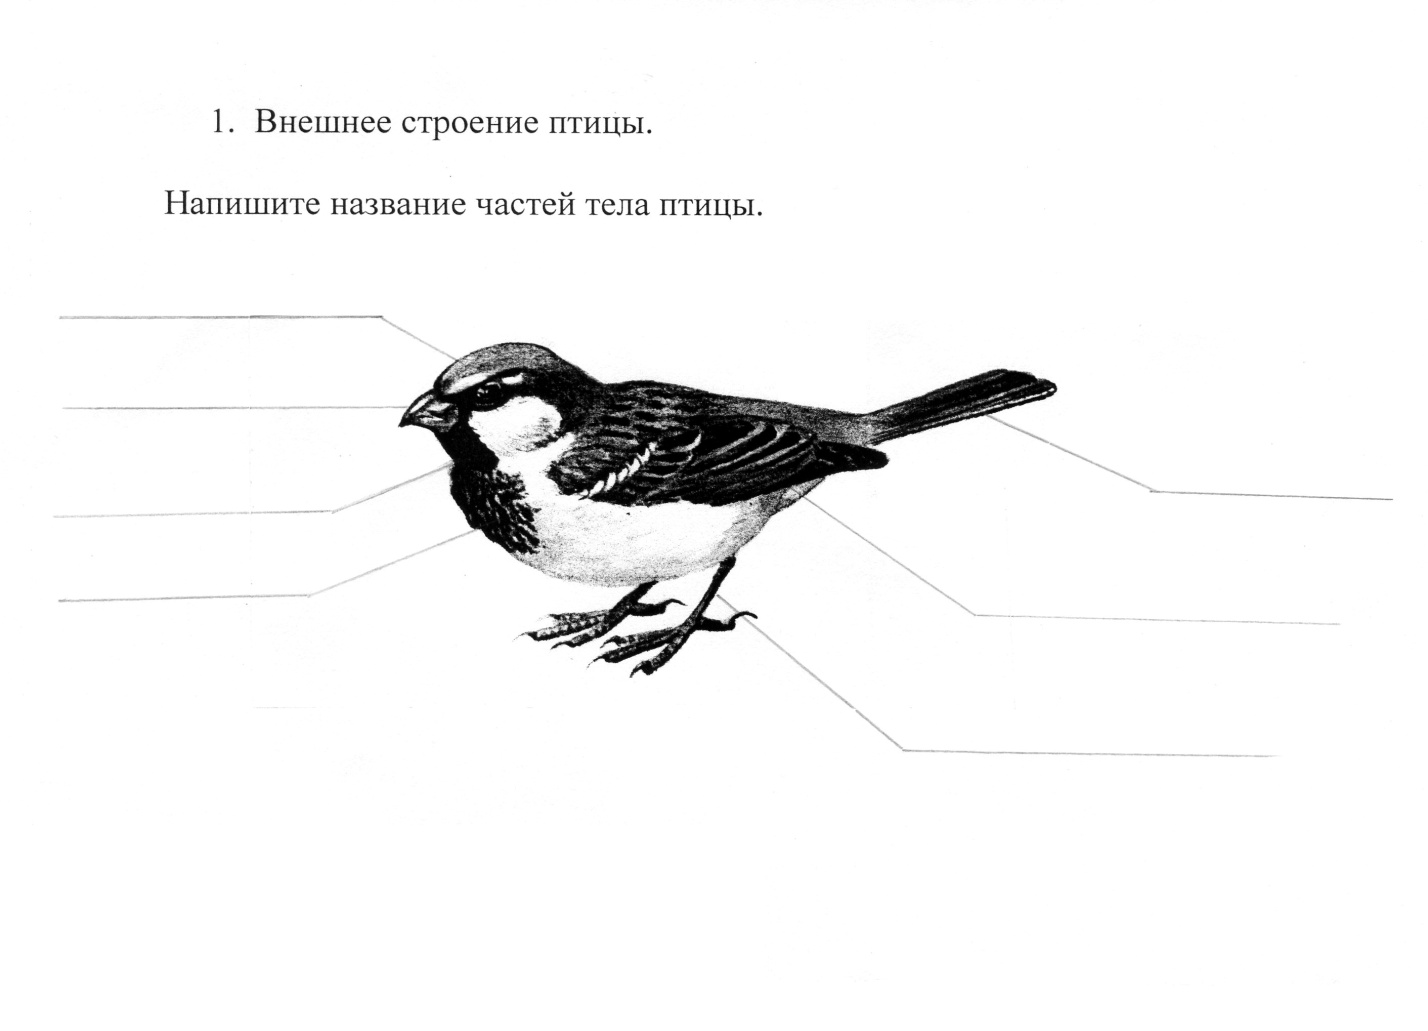 Конспект урока по биологии на тему Птицы леса